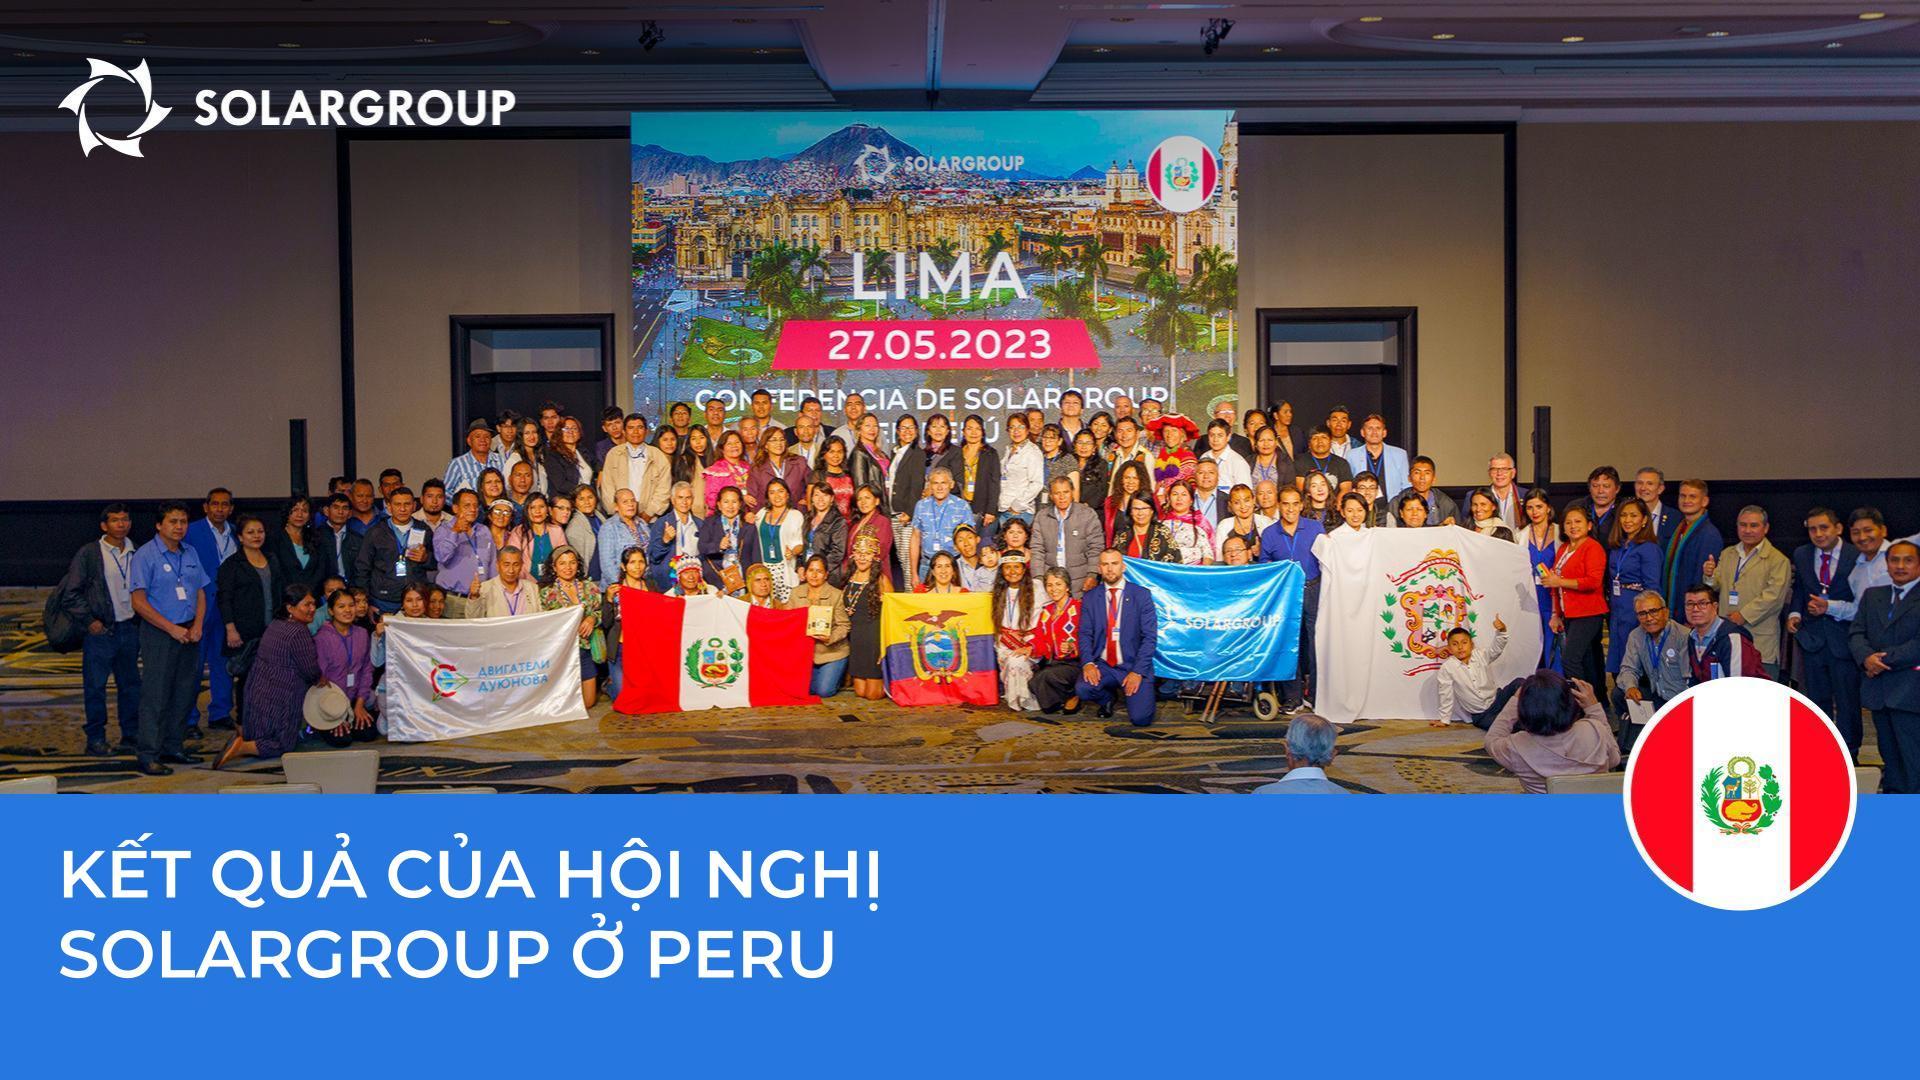 Một cấp độ mới của việc phát triển dự án ở Mỹ Latinh: Những gì hội nghị SOLARGROUP ở Peru đã thể hiện